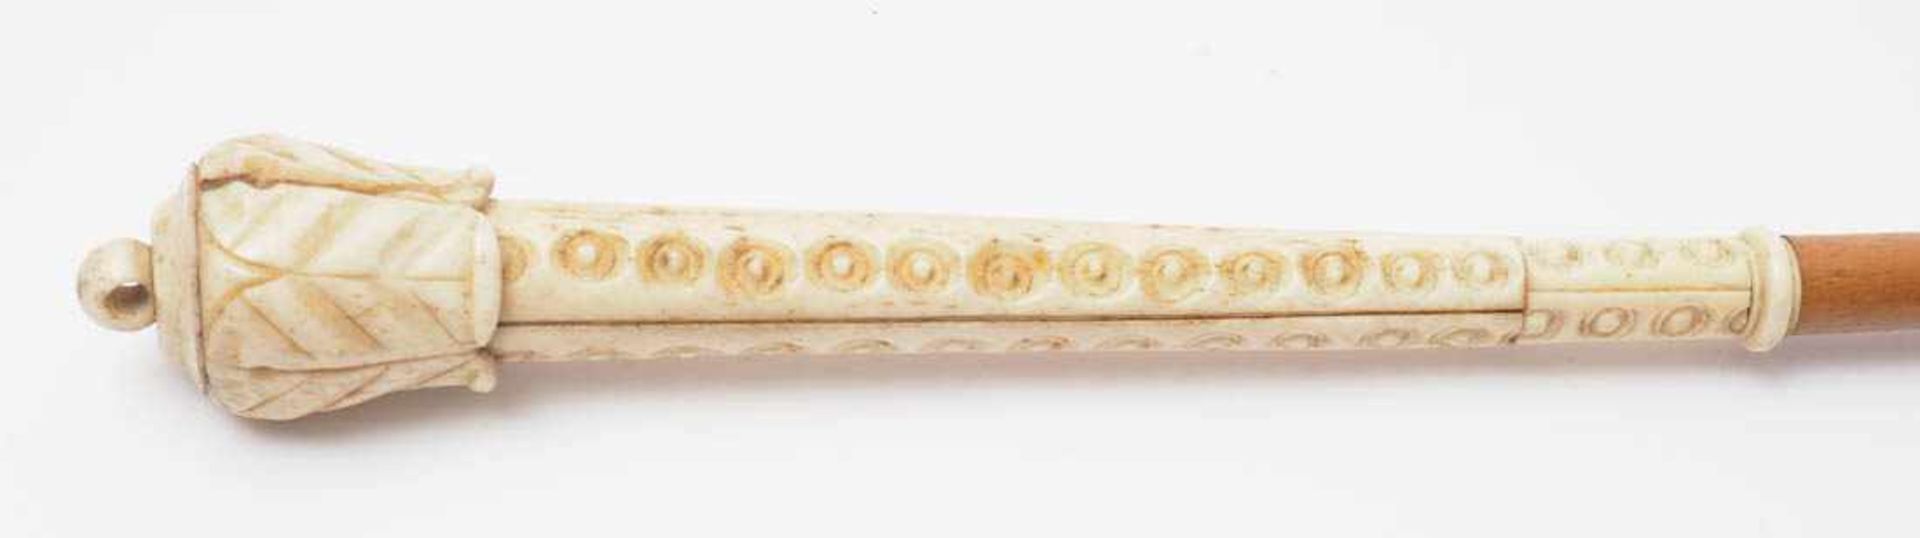 Damenschirm, 19.Jhdt. Griff aus geschnitztem Elfenbein. L.73cm. - Bild 2 aus 3